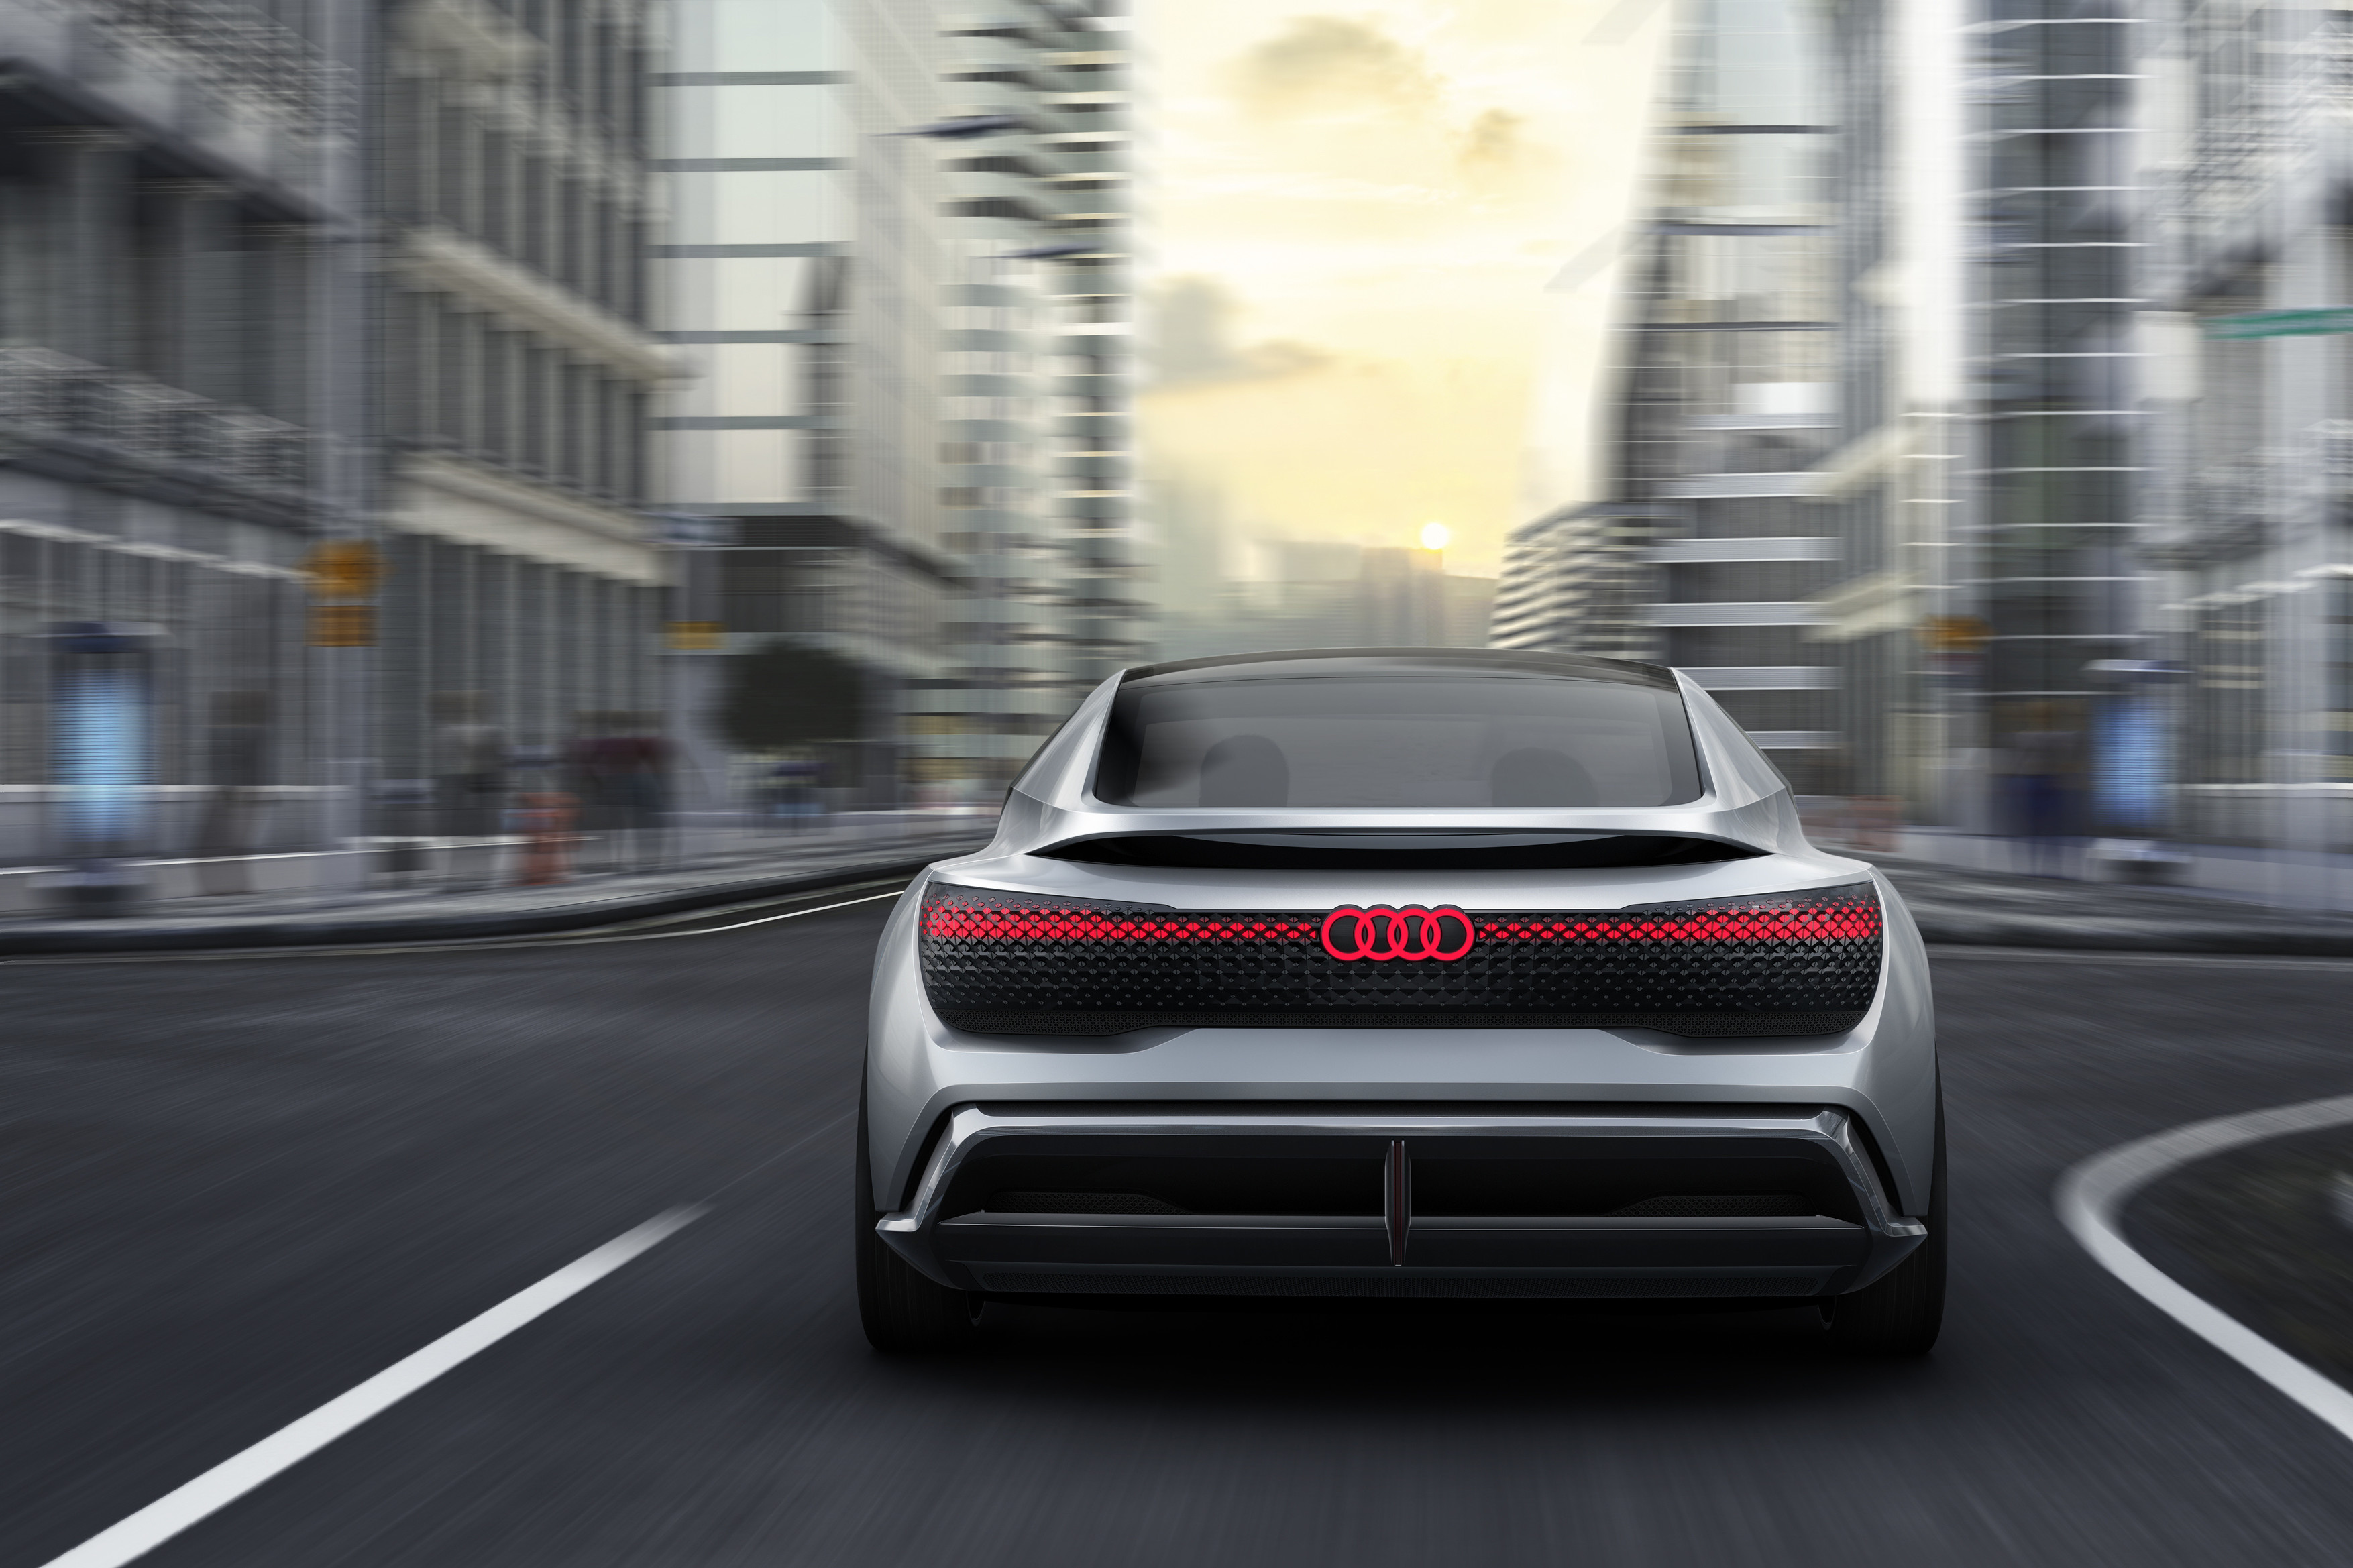 Audi Desarrolla Su Estrategia Corporativa Y Planea Vender 800 000 Vehiculos Electrificados En 2025 Audi Mediaservices Espana